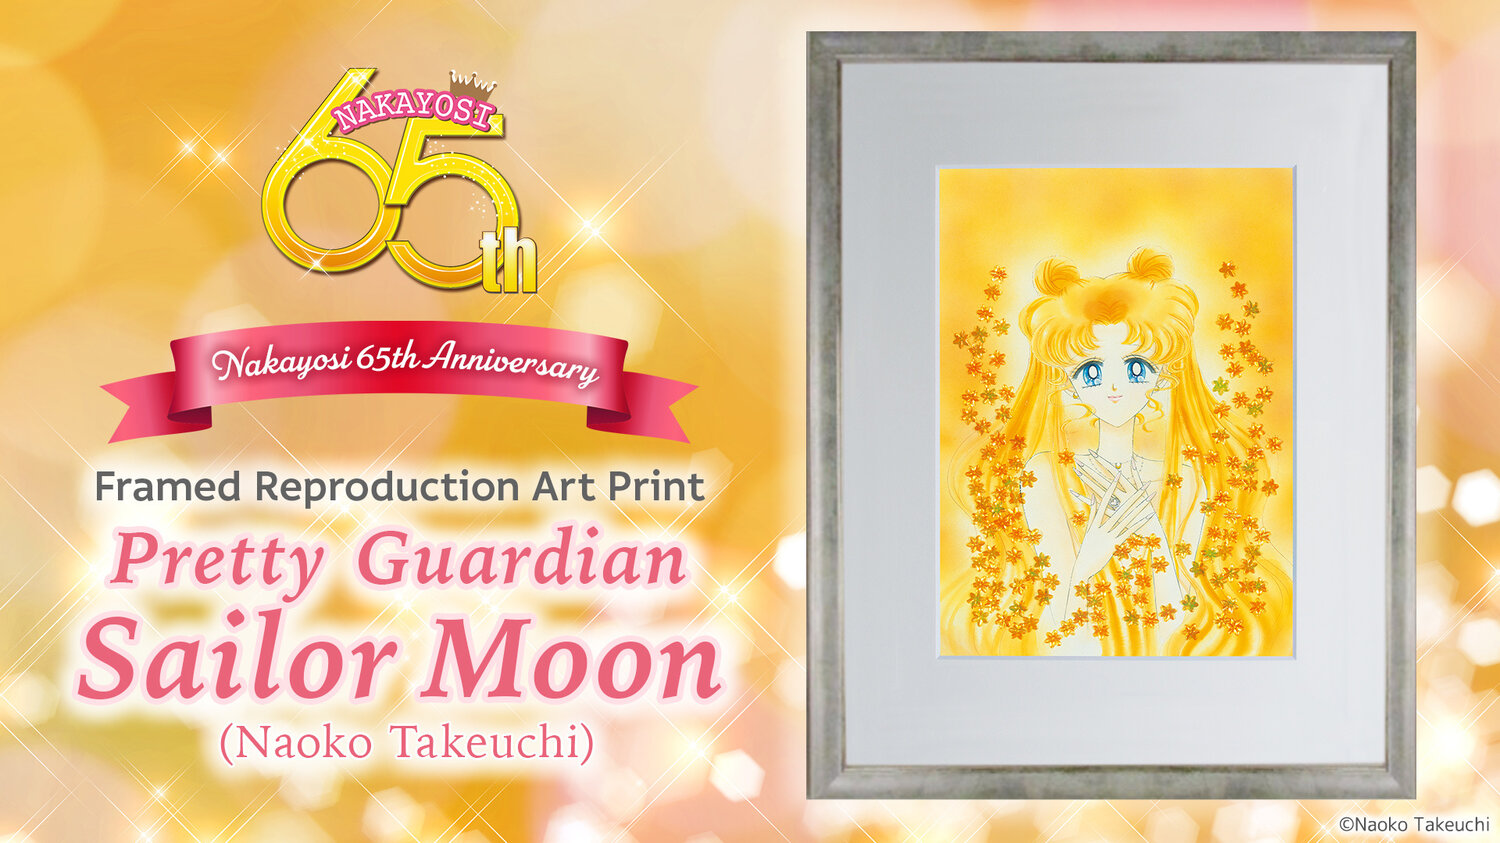 Nakayosi 65th Anniversary Framed Reproduction Art Print: Pretty Guardian Sailor Moon (Naoko Takeuchi)